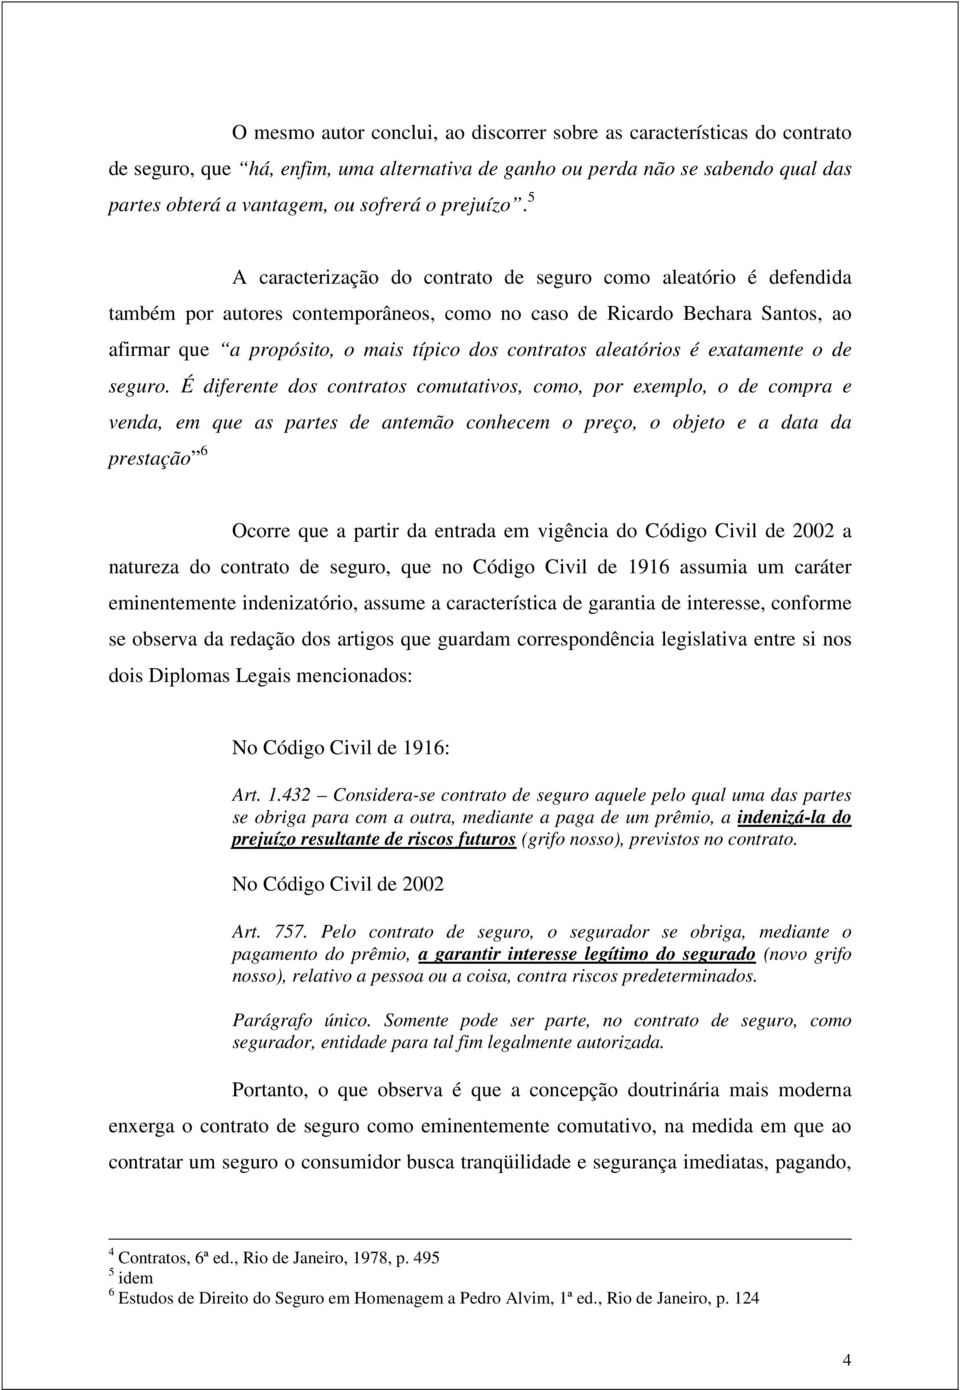 5 A caracterização do contrato de seguro como aleatório é defendida também por autores contemporâneos, como no caso de Ricardo Bechara Santos, ao afirmar que a propósito, o mais típico dos contratos